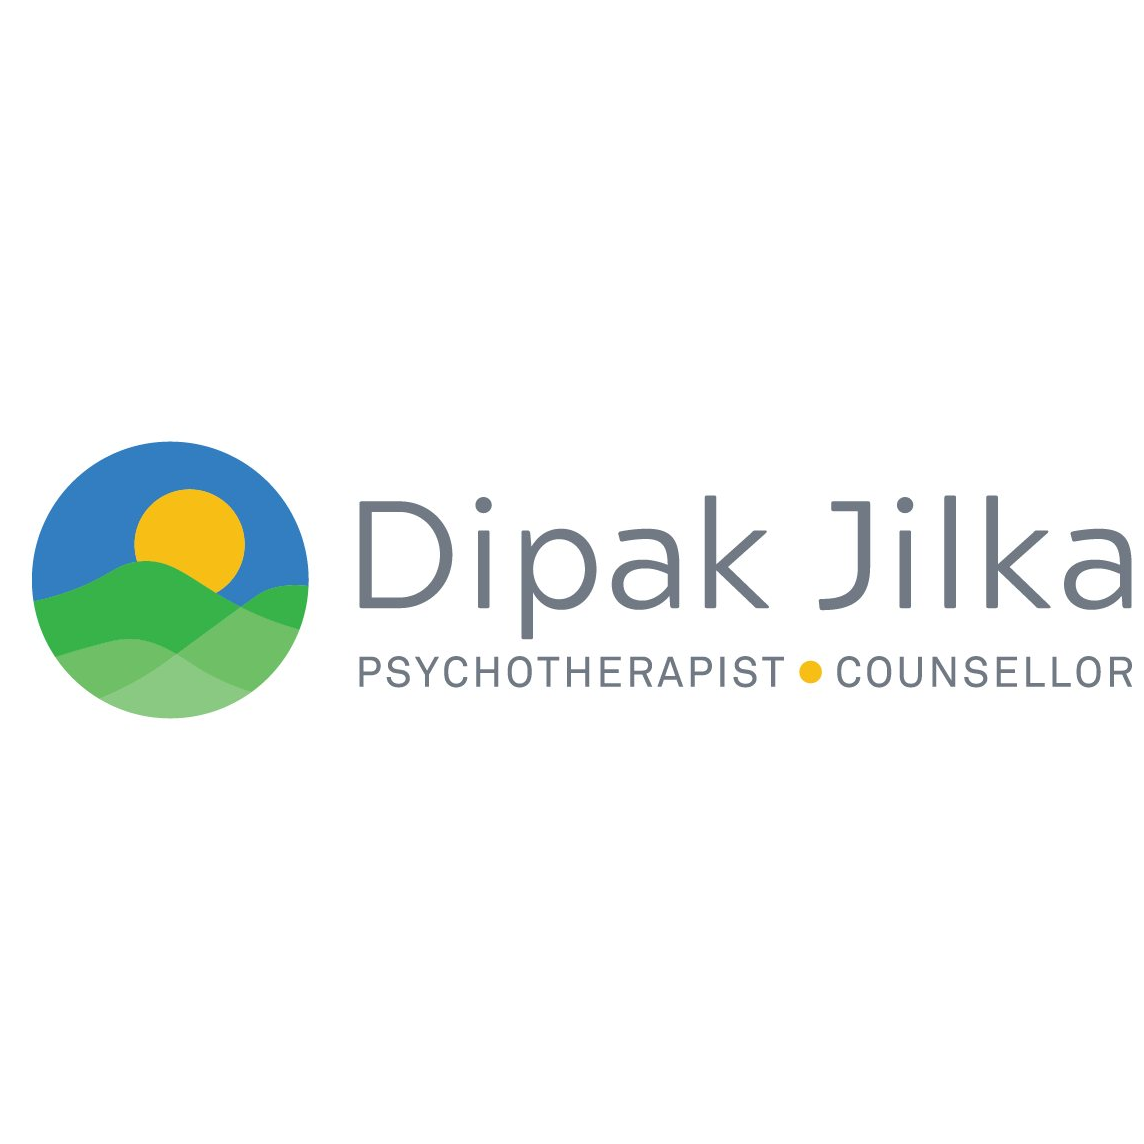 Psychotherapist Sydney - Dipak Jilka